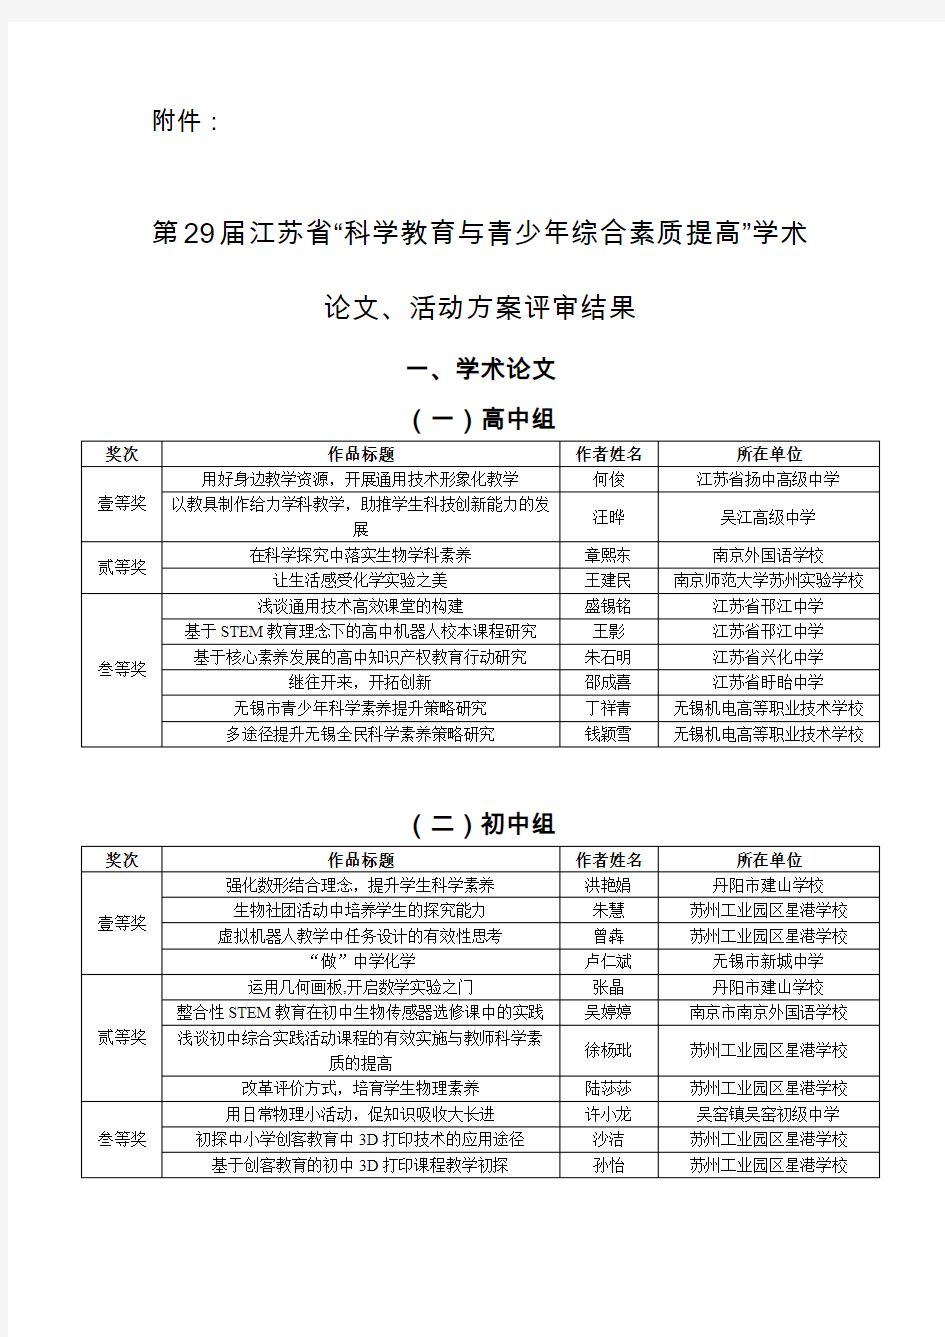 活动方案评审结果-江苏青少年科技教育协会